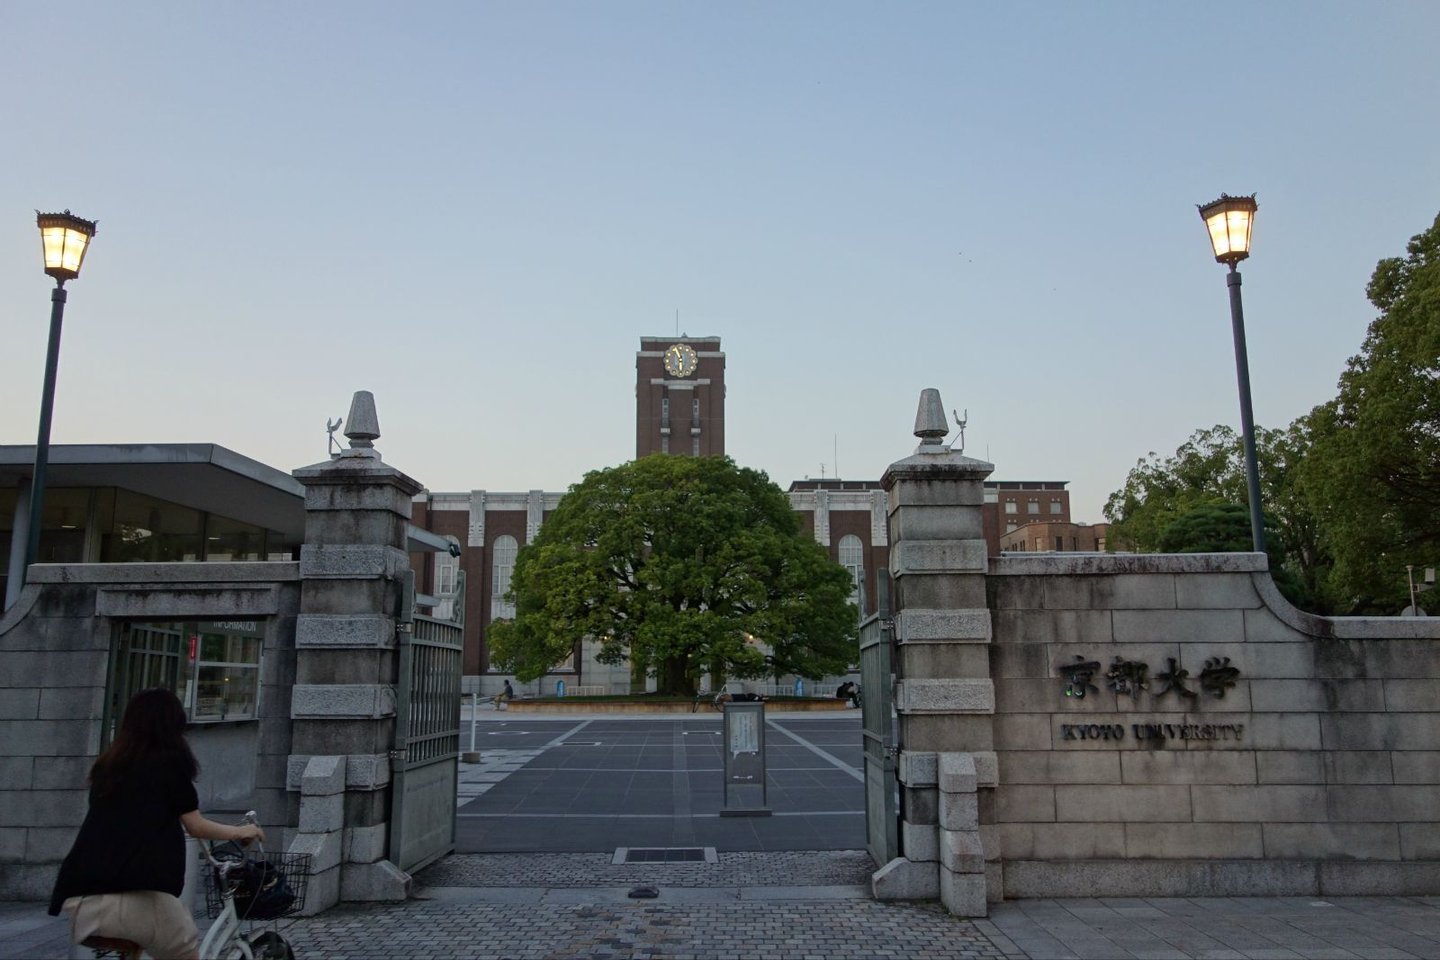 位于京都市左京区,在日本仅次于东京大学的学科齐全,规模宏大的国立